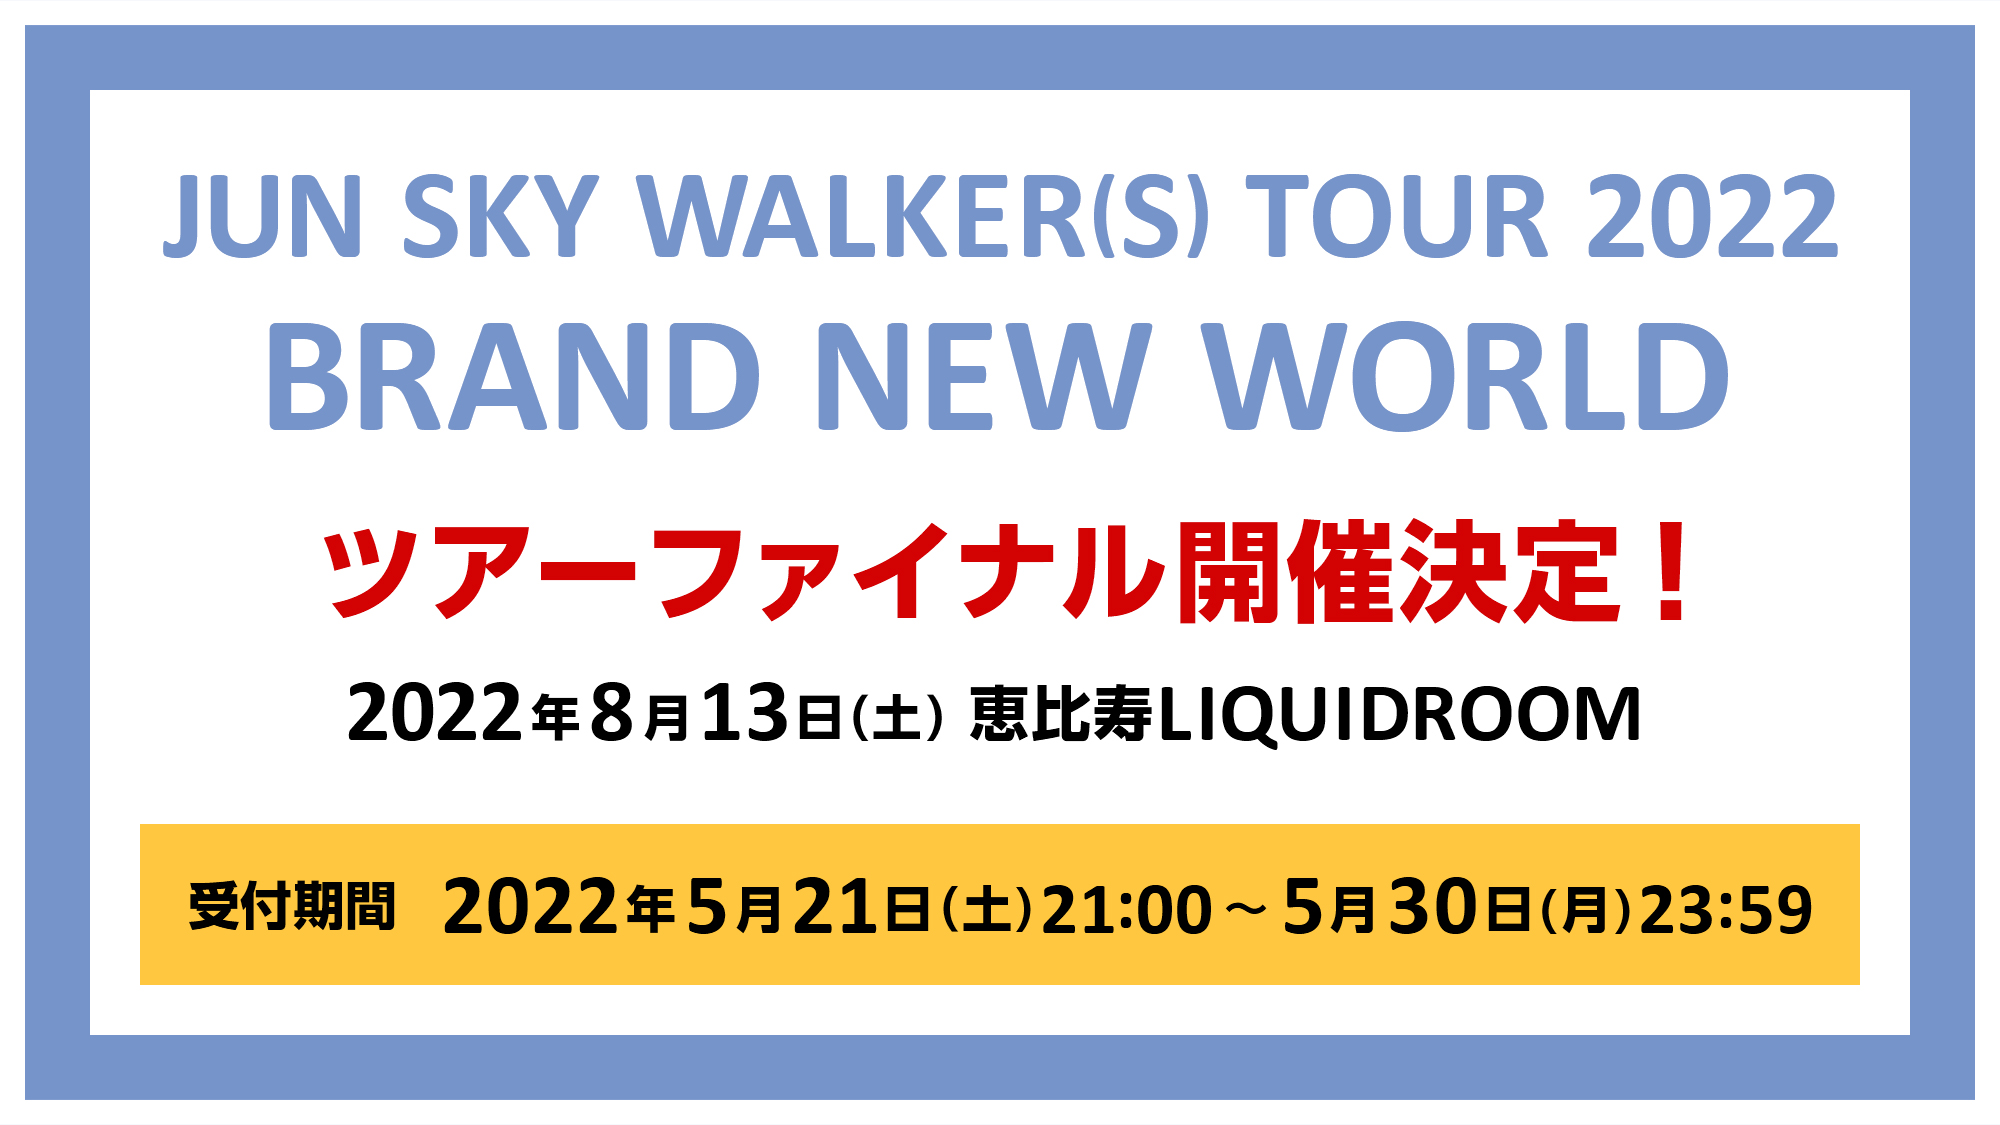 「JUN SKY WALKER(S) TOUR 2022 BRAND NEW WORLD」ツアーファイナル開催決定！